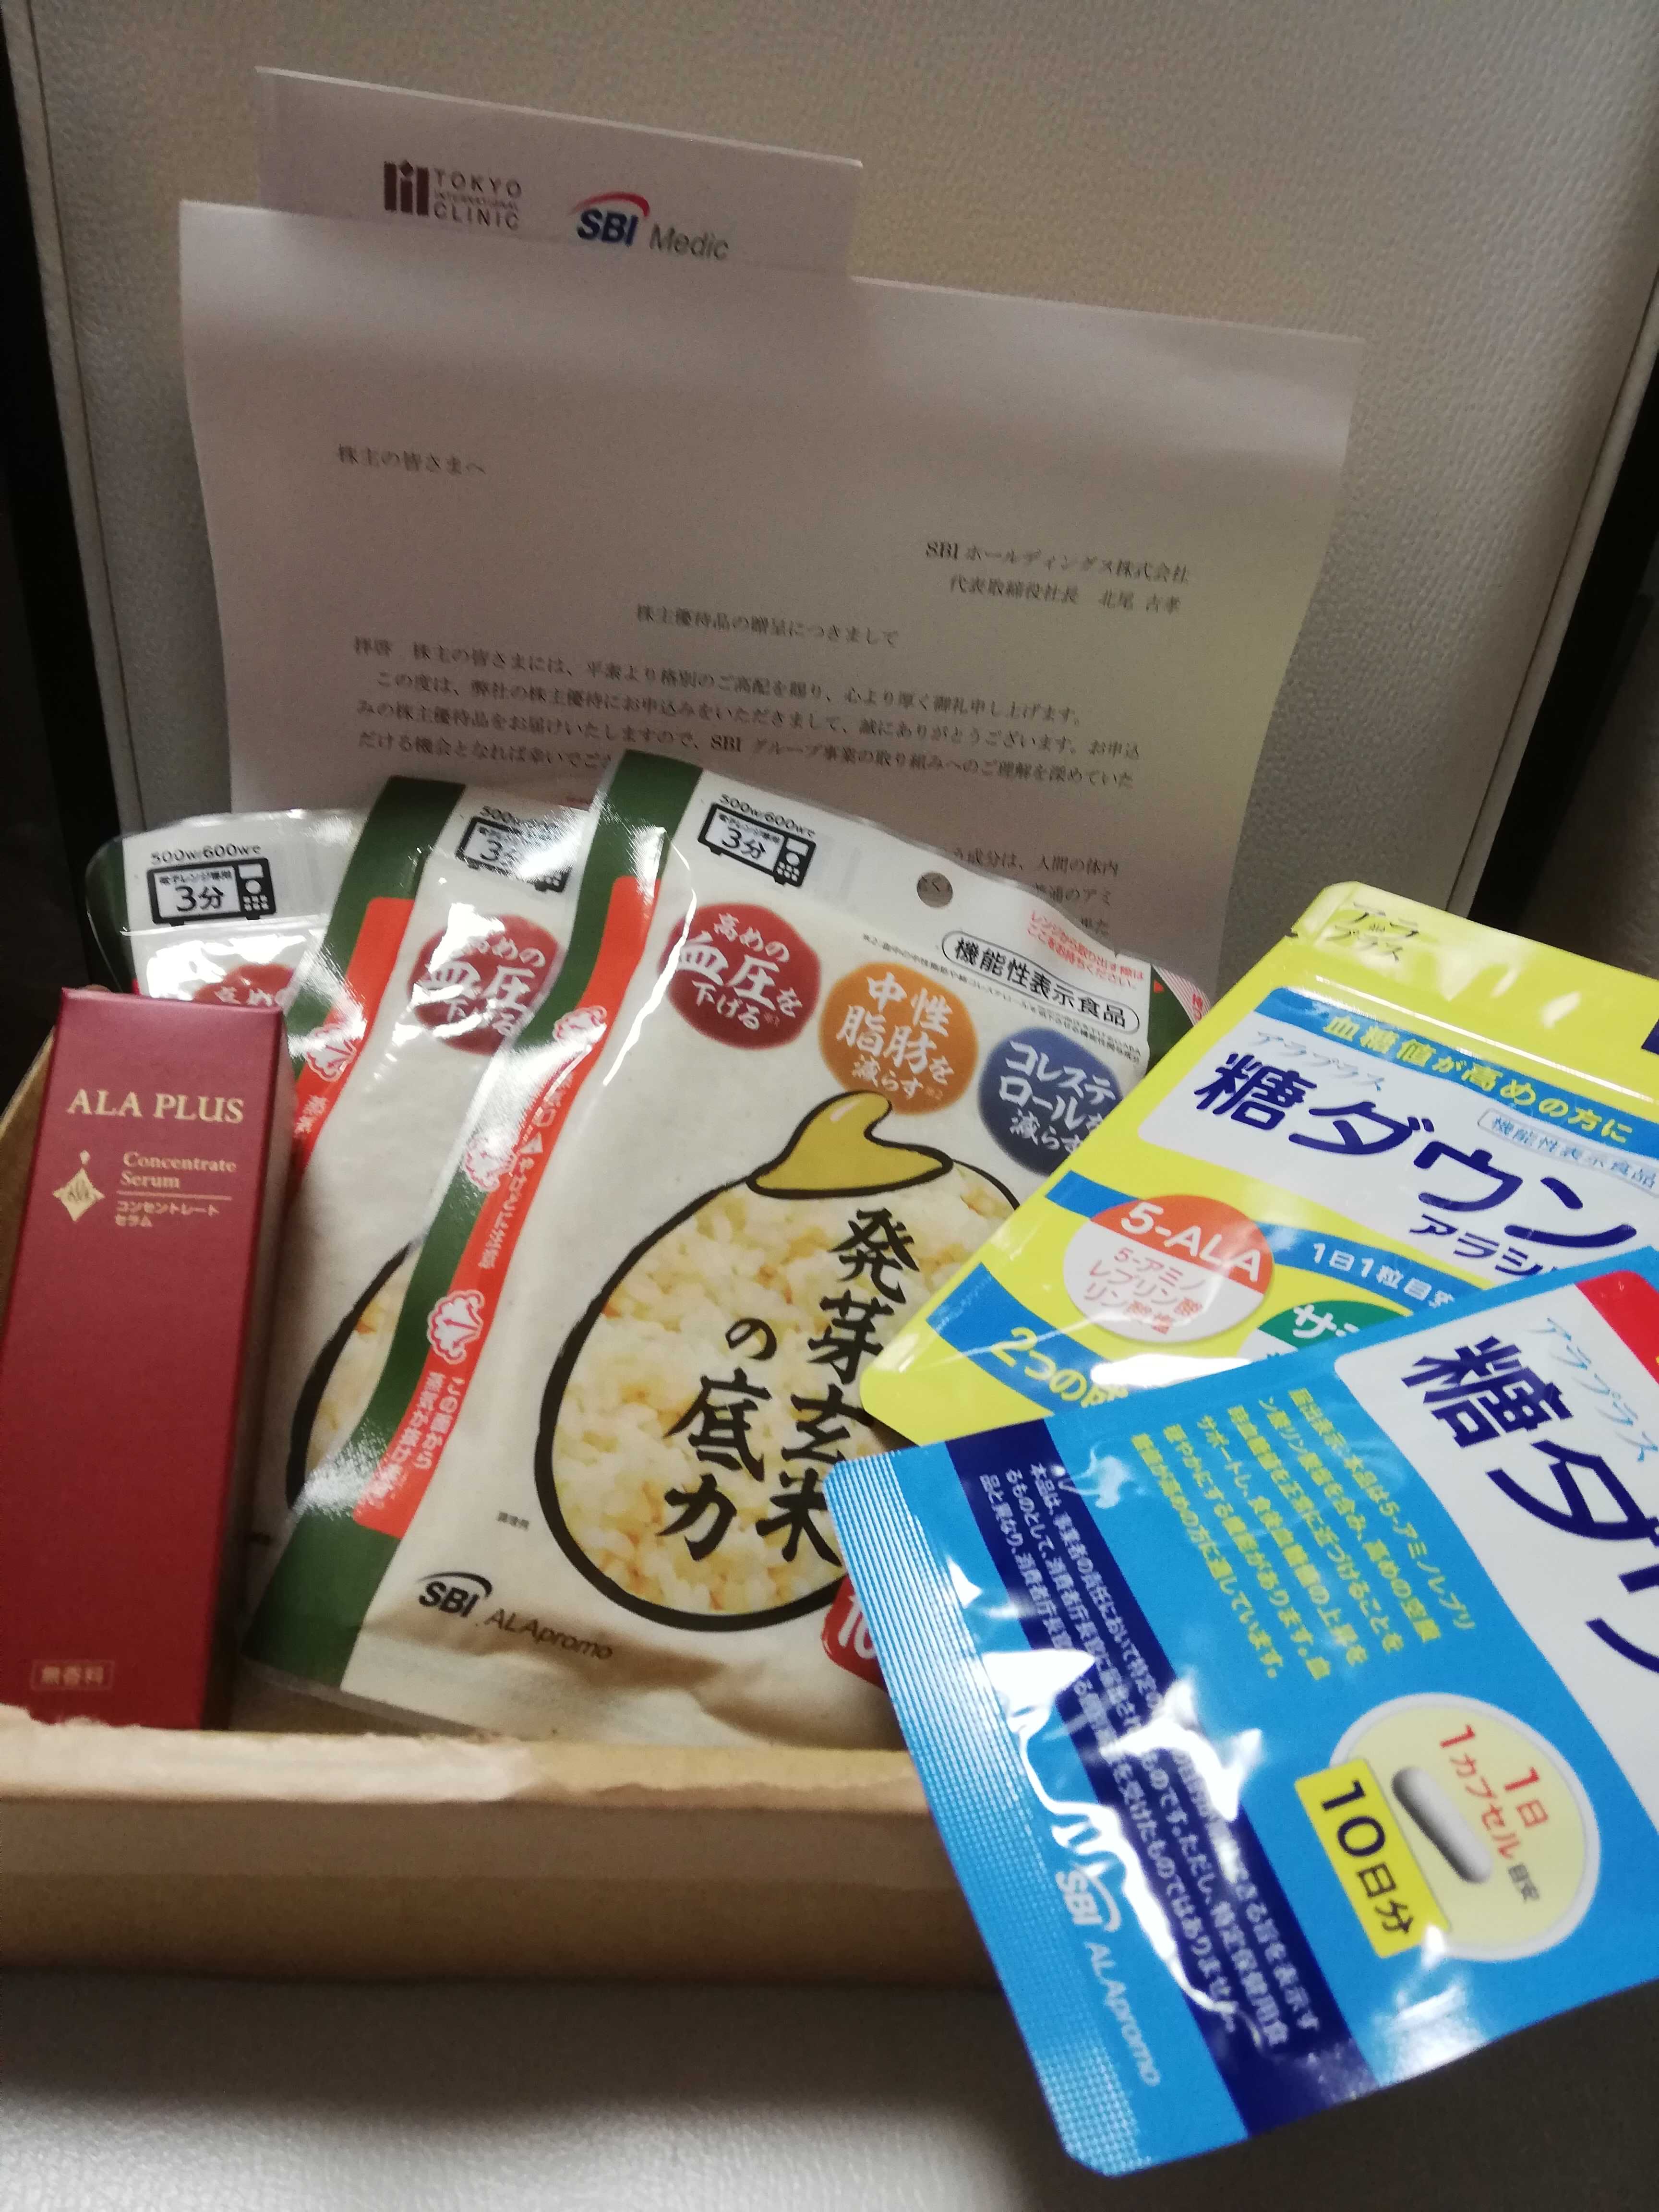 SBIホールディングスさんから株主優待! | ☆賢いお買い物☆ - 楽天ブログ